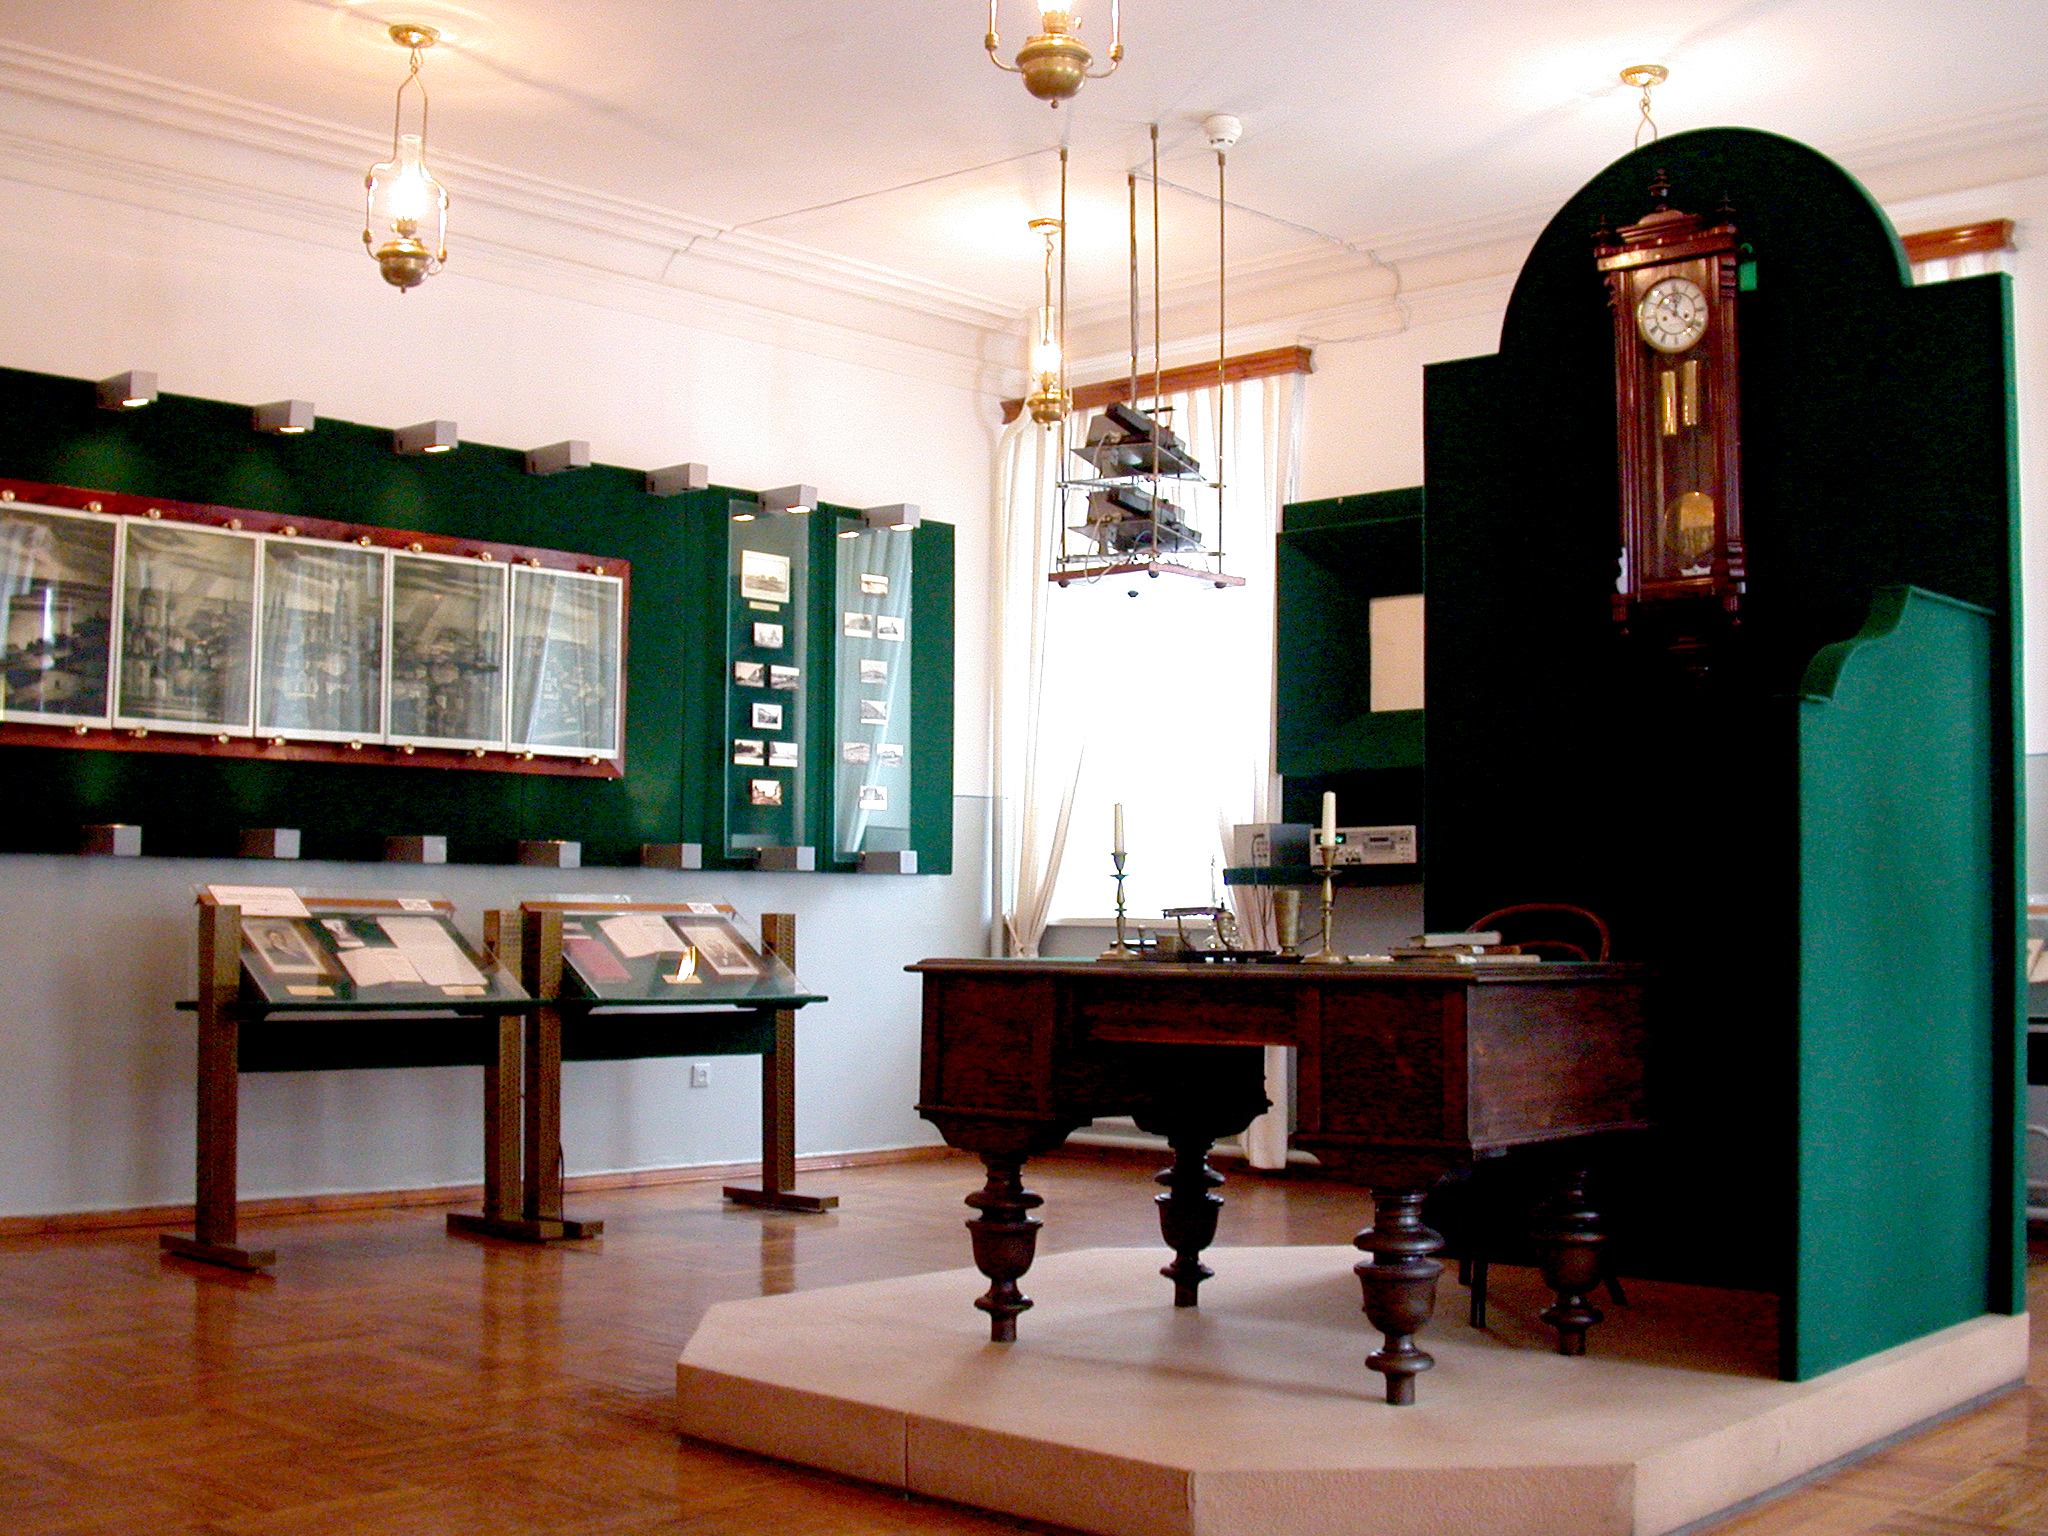 Музей «Симбирская классическая гимназия»

